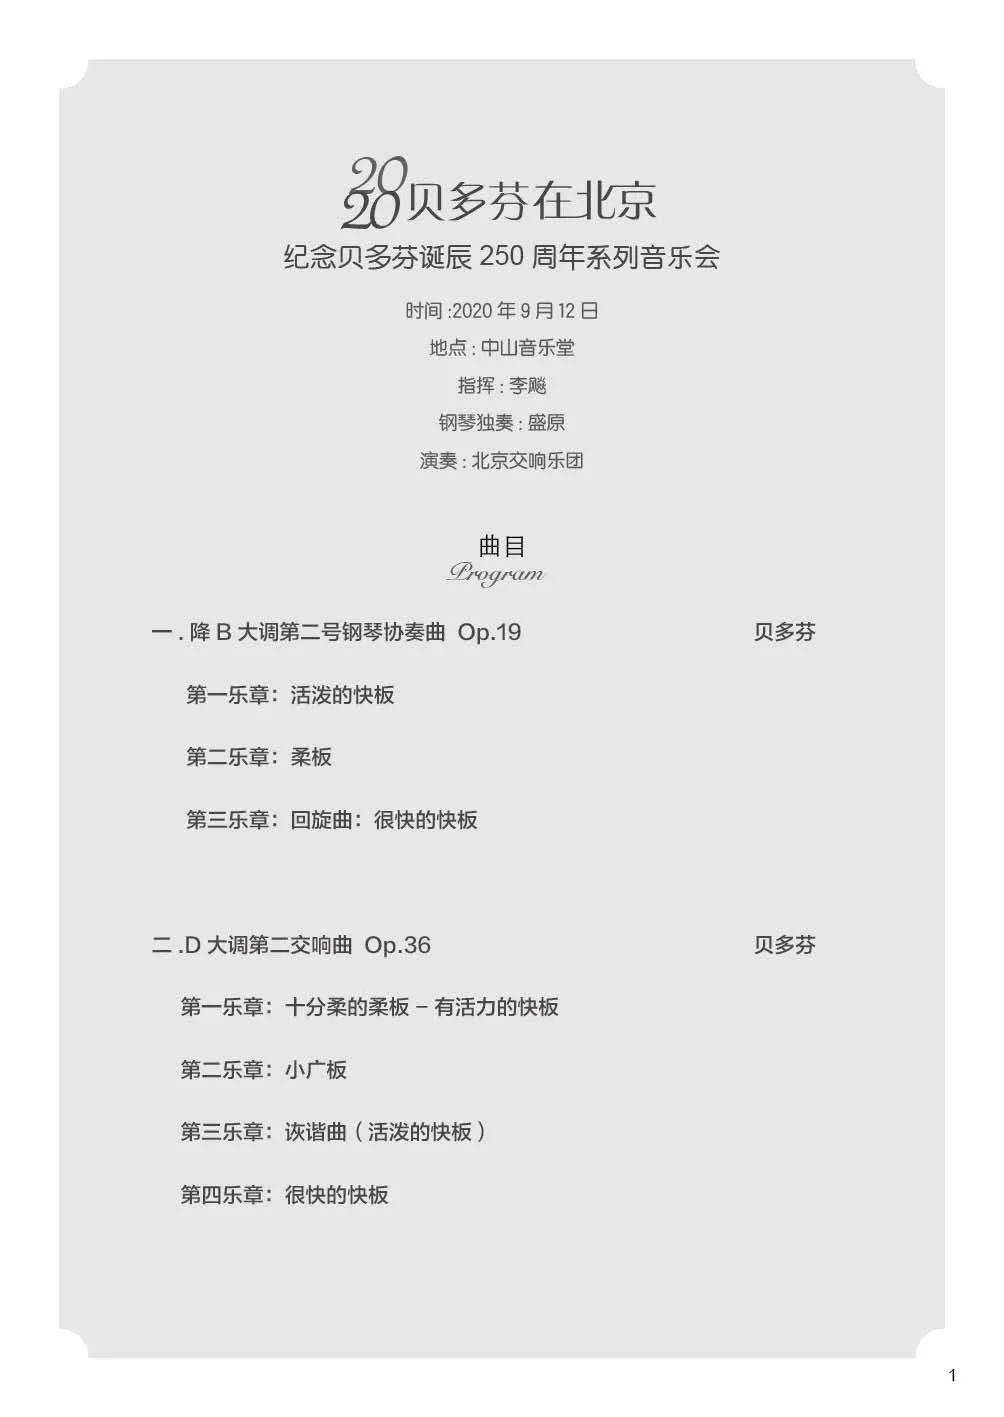 

2017年3月24日中国国足世界杯预选赛赛程时间完整版